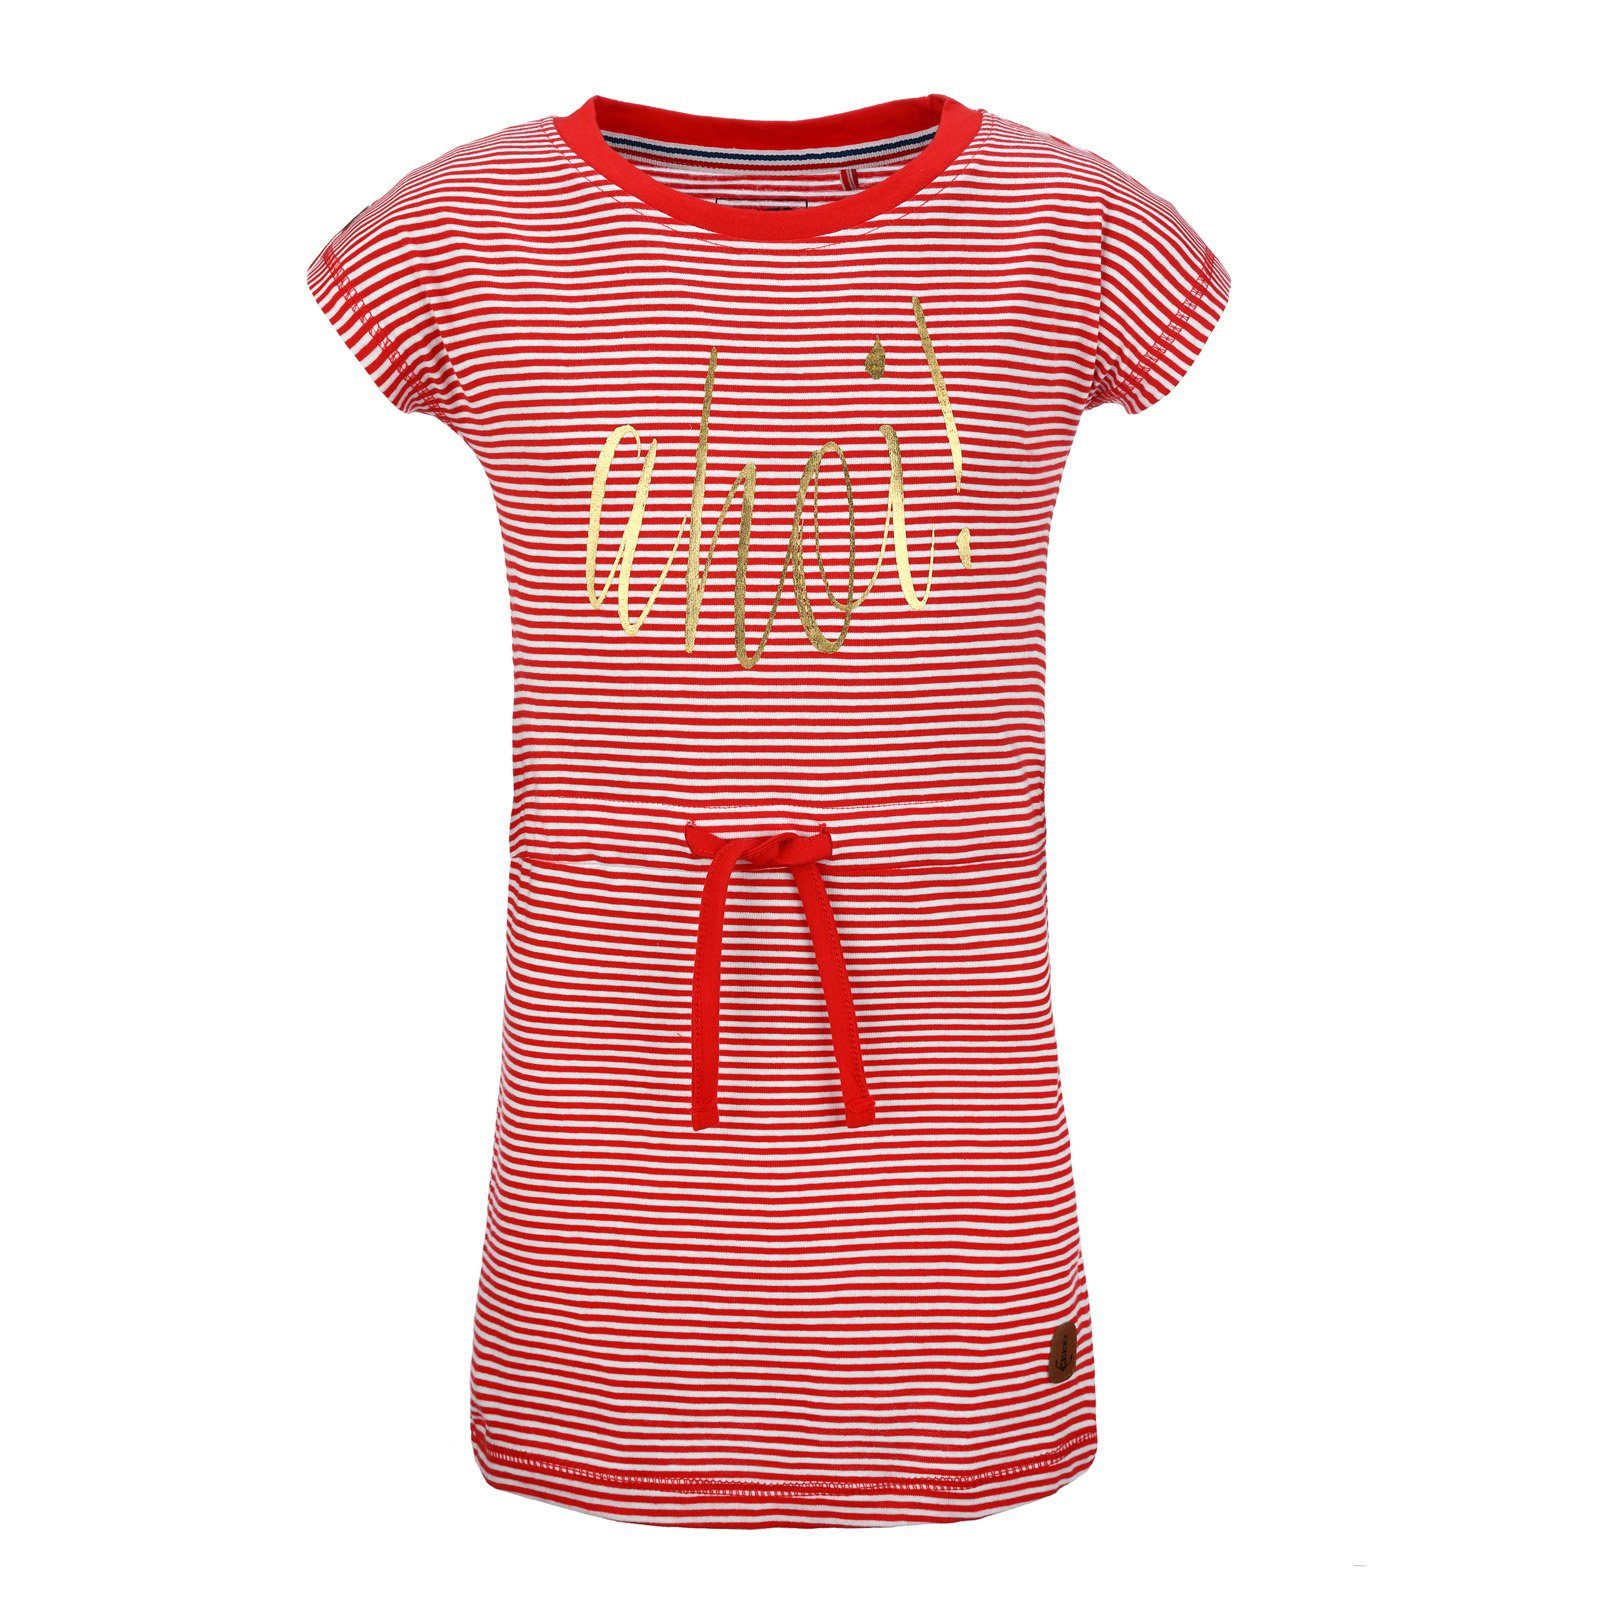 modAS Shirtkleid Kinder Mädchenkleid Print Ahoi mit Streifen - Streifenkleid Baumwolle (02) rot / weiß